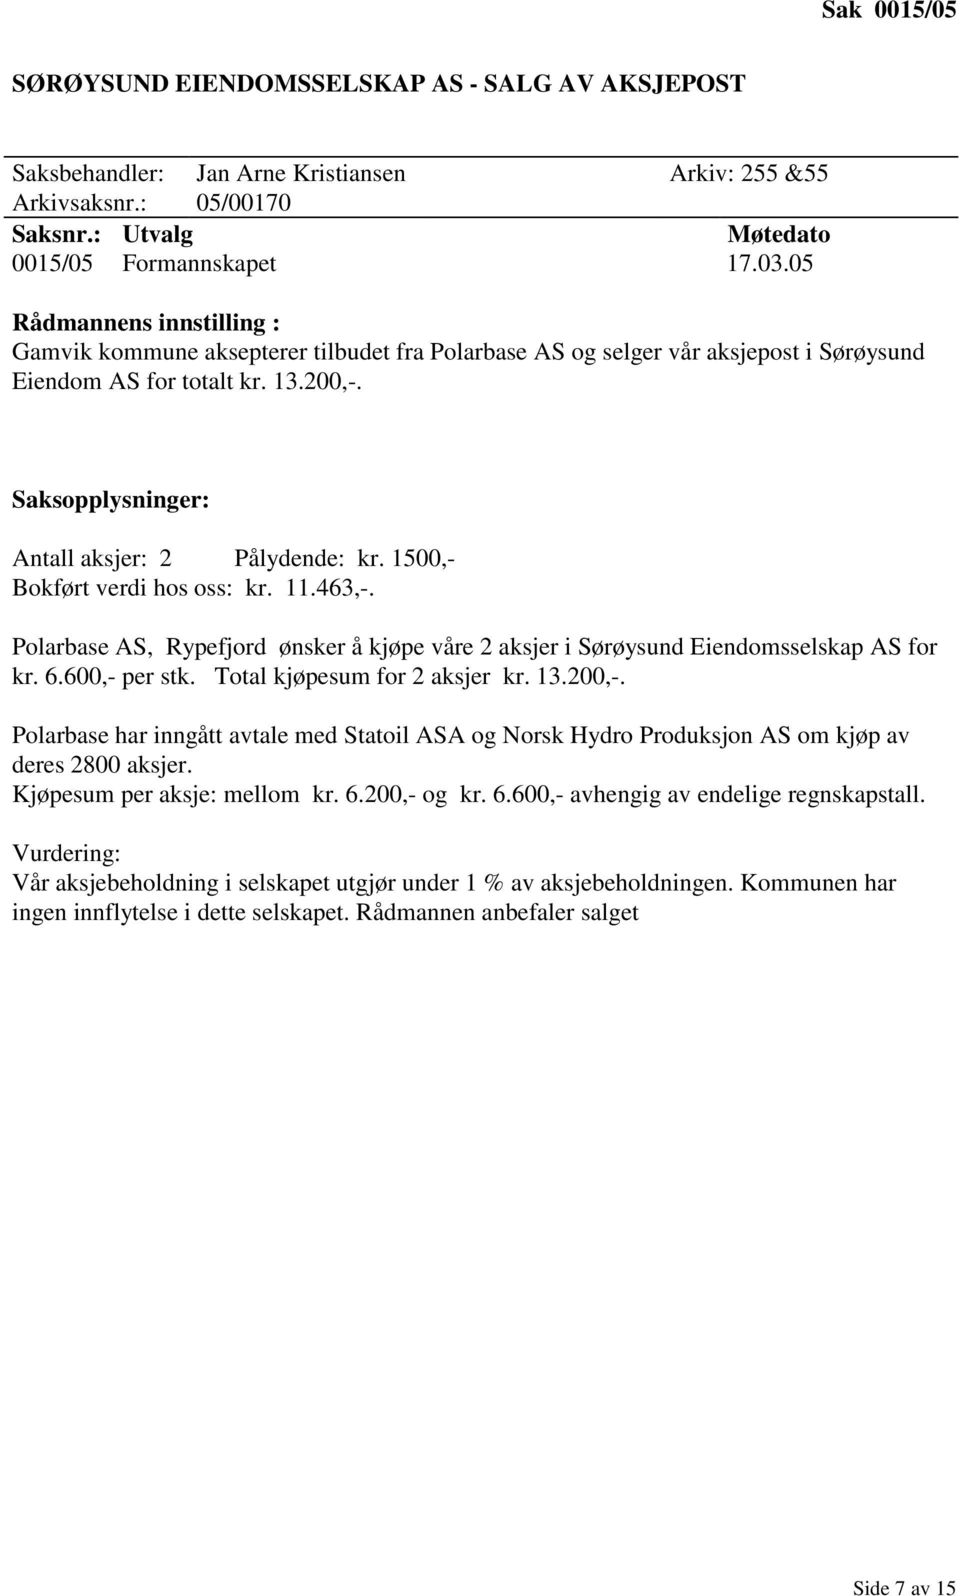 463,-. Polarbase AS, Rypefjord ønsker å kjøpe våre 2 aksjer i Sørøysund Eiendomsselskap AS for kr. 6.600,- per stk. Total kjøpesum for 2 aksjer kr. 13.200,-.